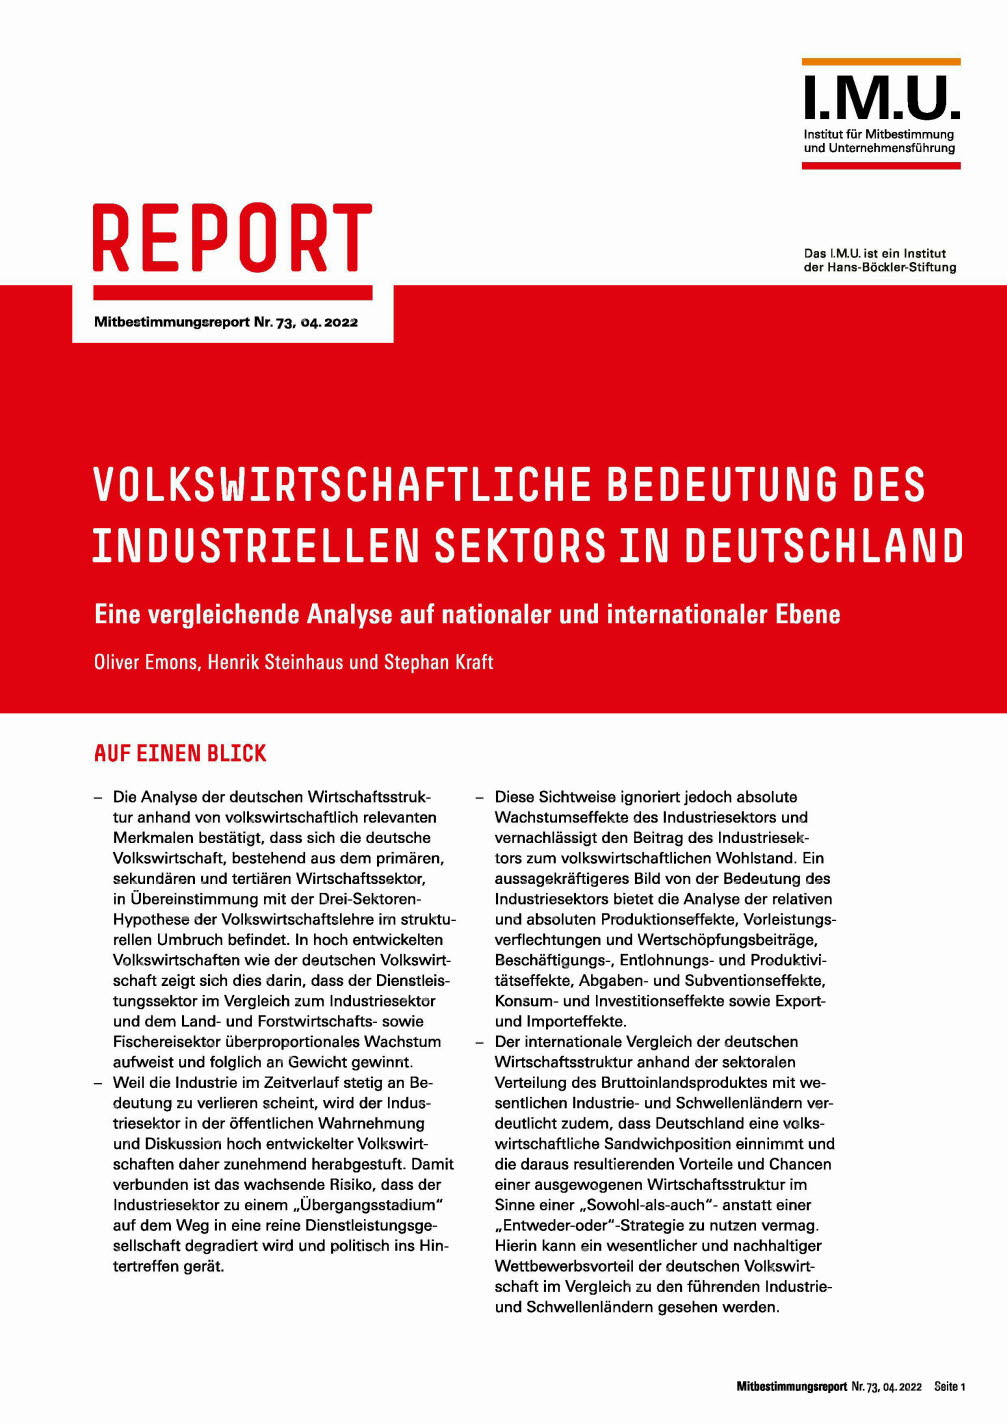 Volkswirtschaftliche Bedeutung des industriellen Sektors in Deutschland